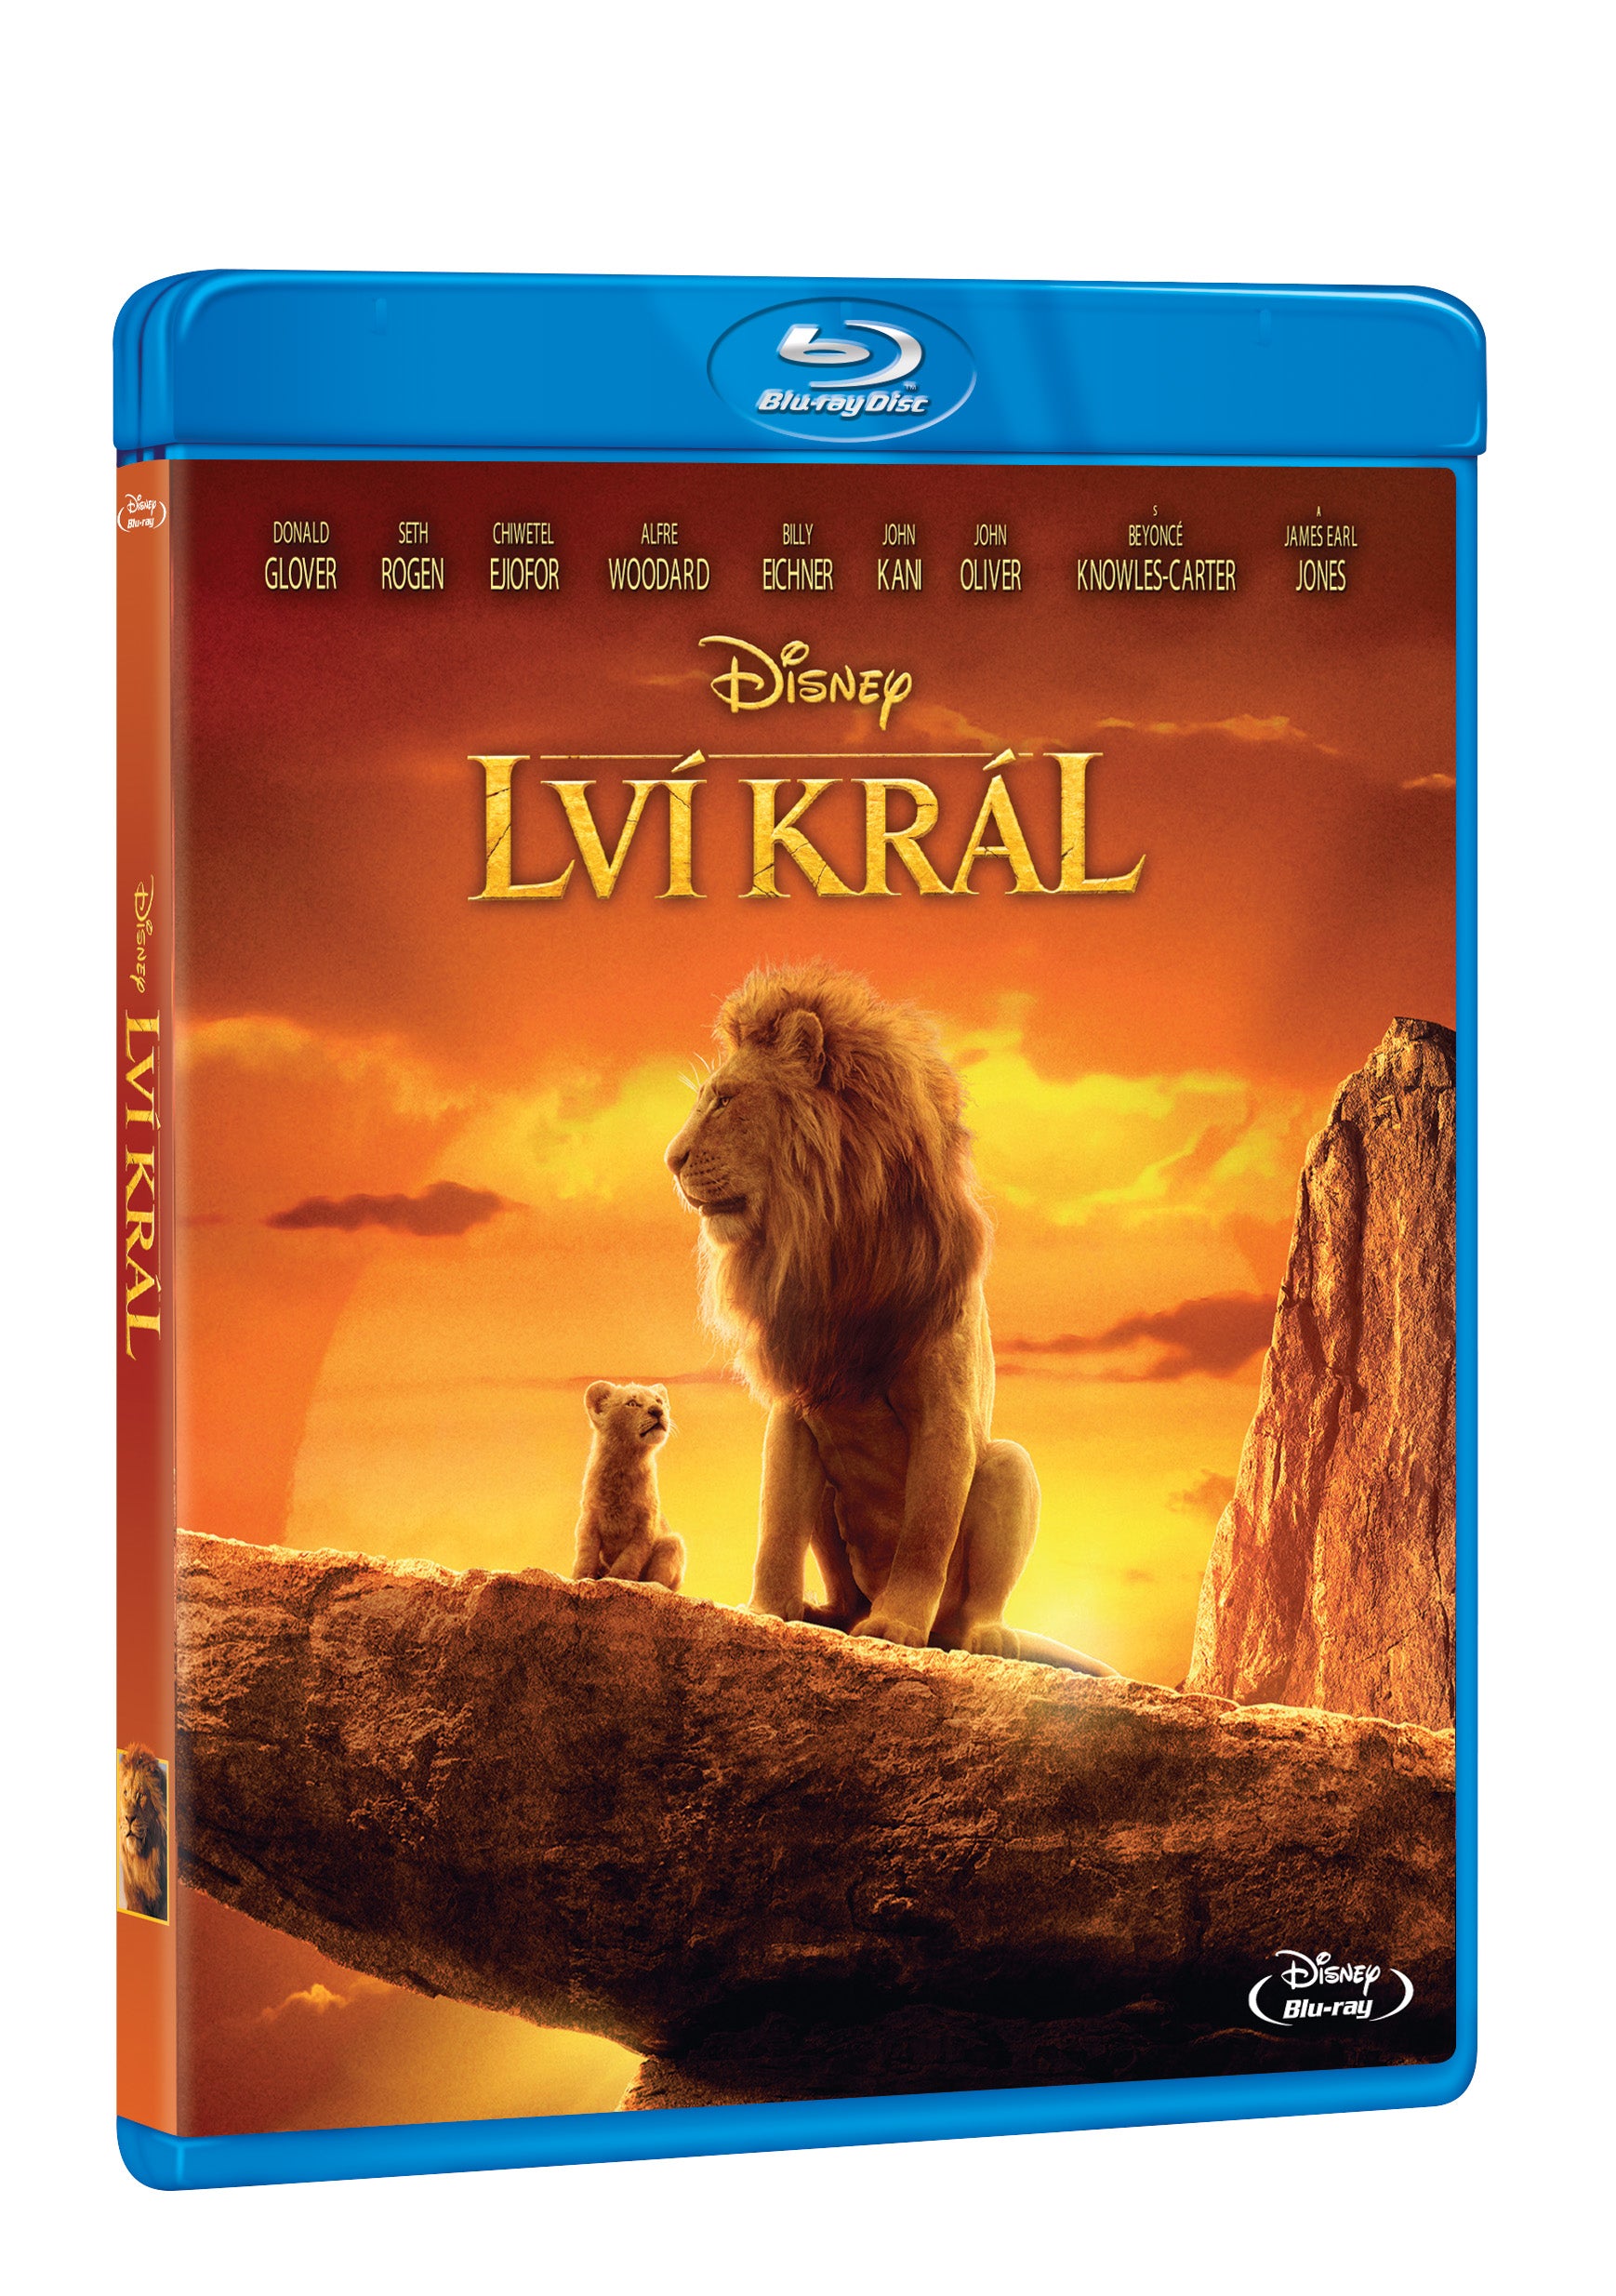 Lvi kral (2019) BD / Lion King (Live Action) - Czech version